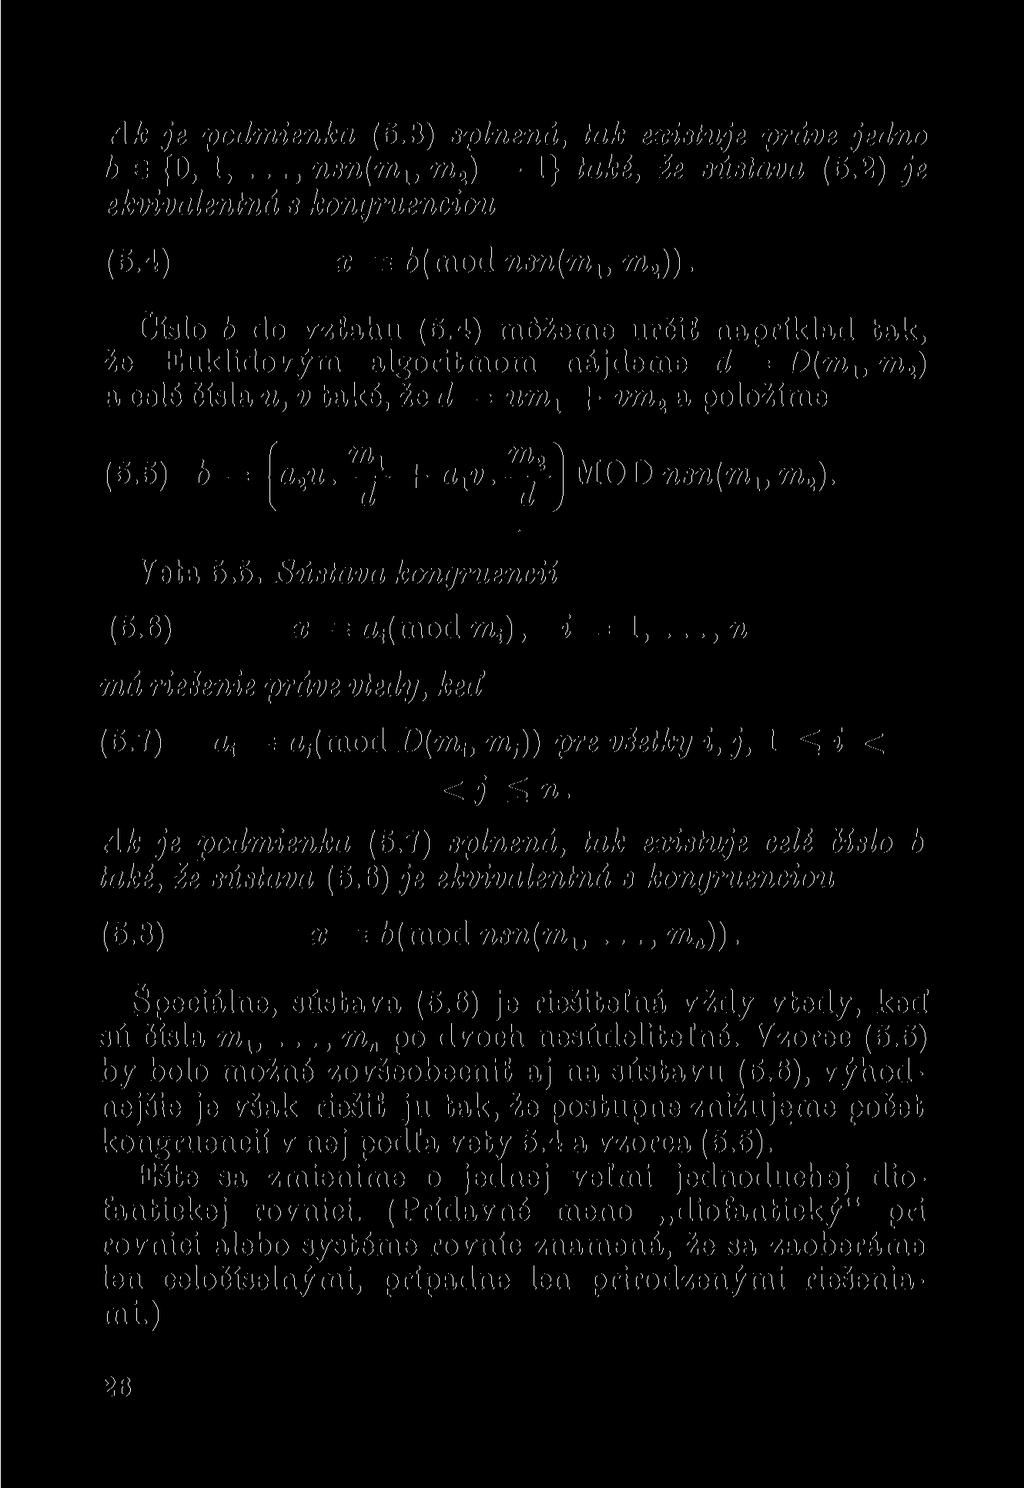 Ak je podmienka (5.3) splněná, tak existuje právě jedno h e (O, 1,..., nsn(m lt m 2 ) 1} také, e sústava (5.2) je ekvivalentná s kongruenciou (5.4) x = 6(mod Jisn(m lt m 2 )). Číslo b do vztahu (5.